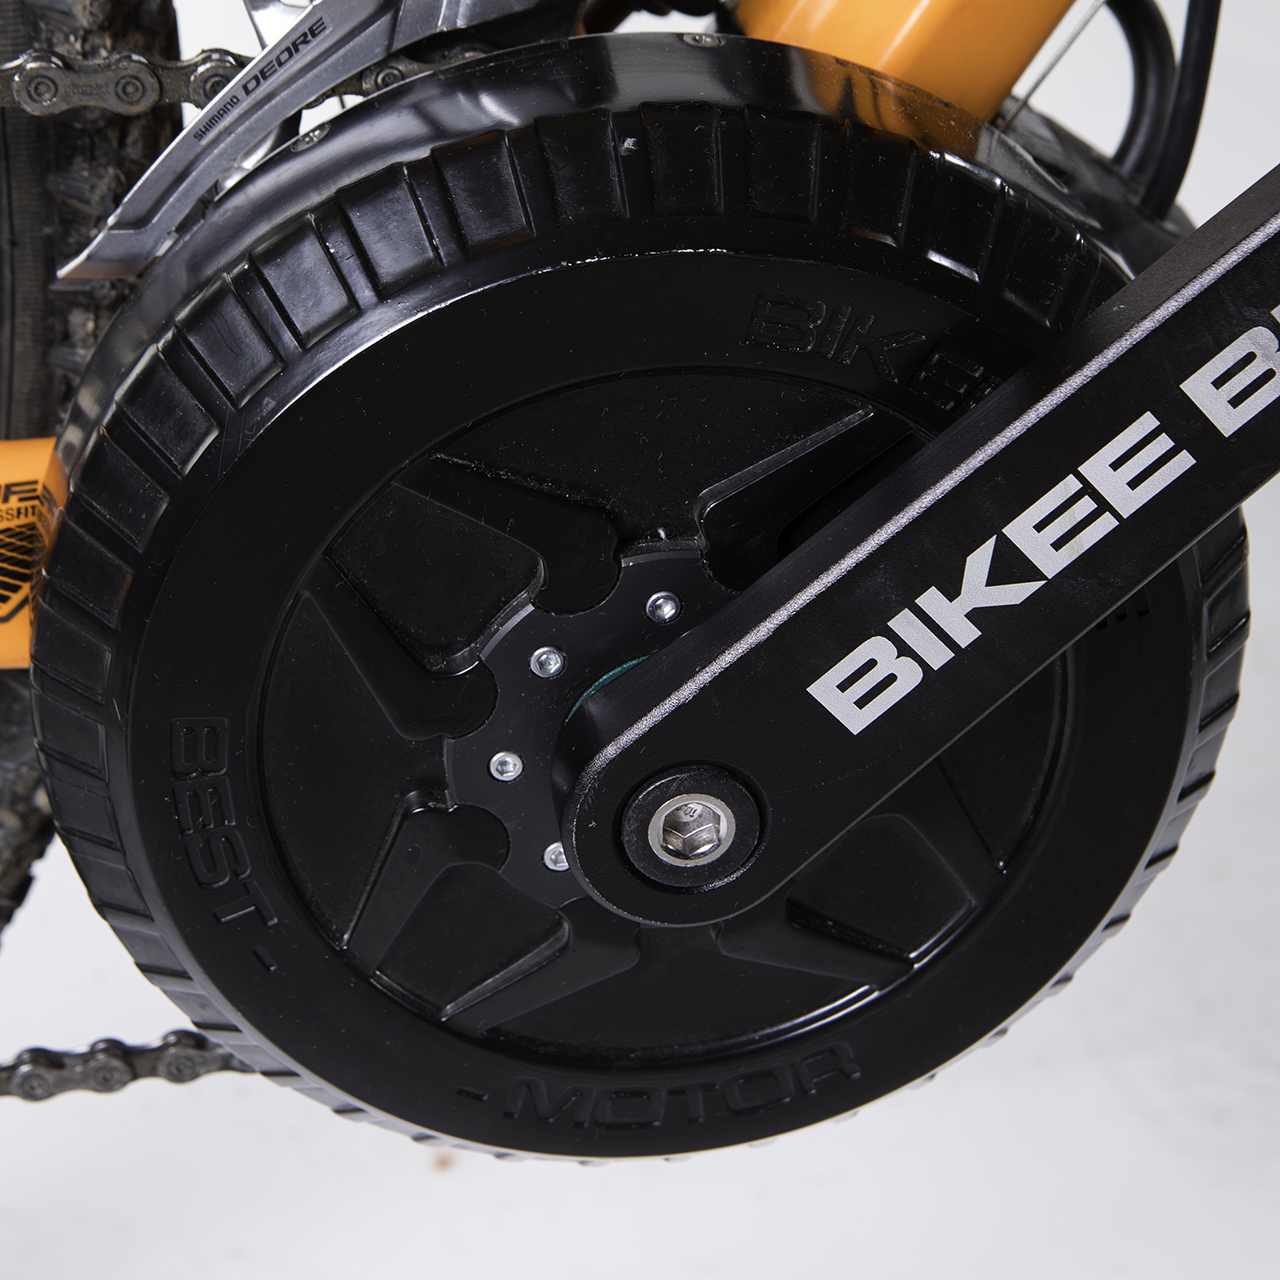 BEST E-BIKE KIT 750W - Bikee Bike: e-bike drive systems fully made